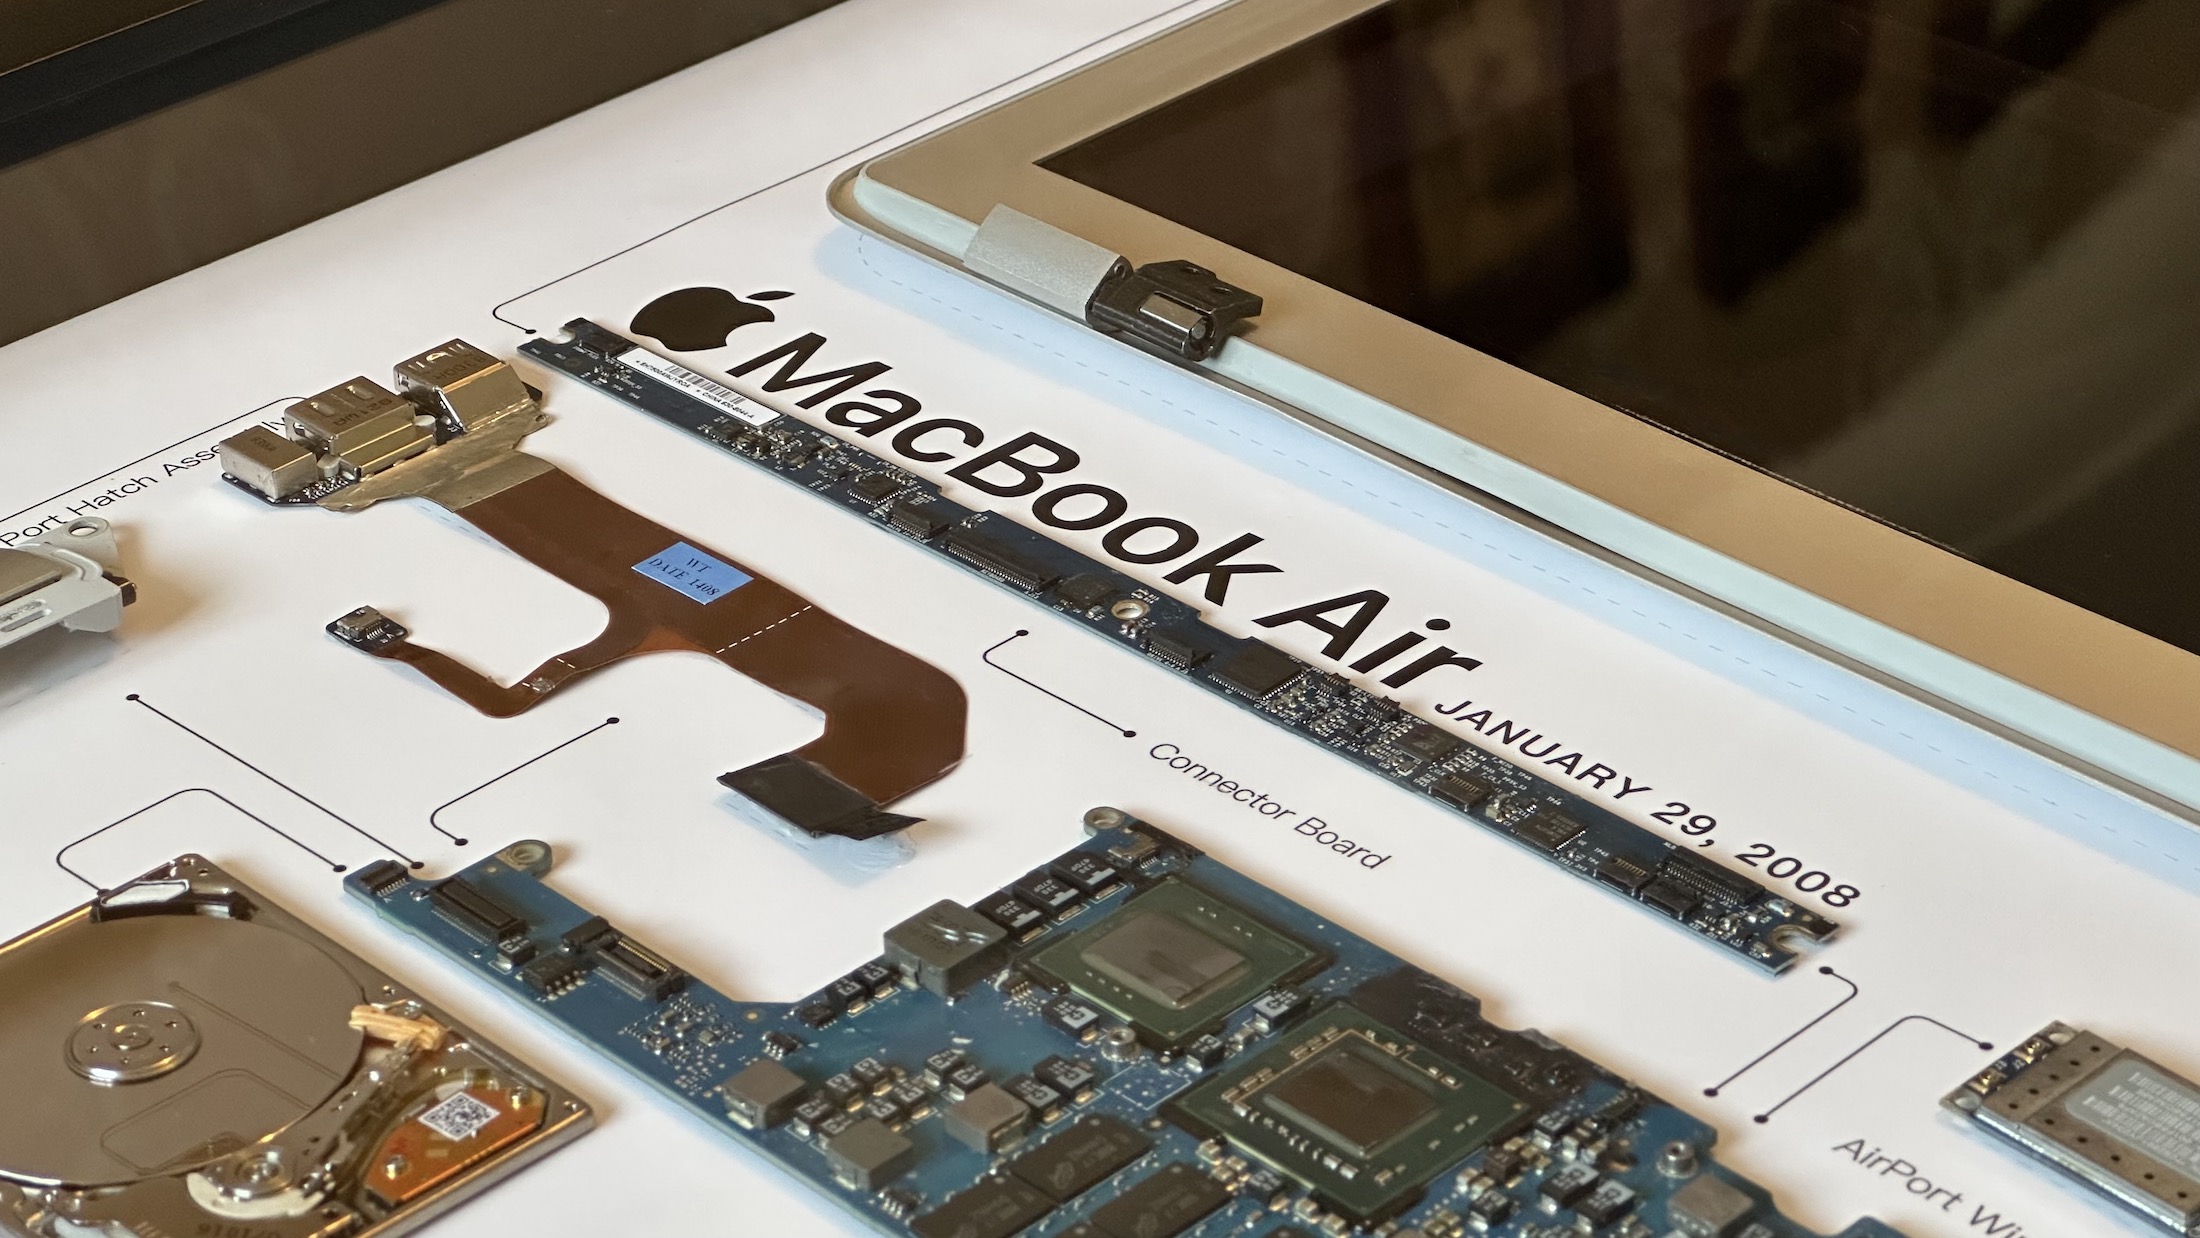 Macbook air with super glued audio jack 🤮 #macbookrepair #macbookair